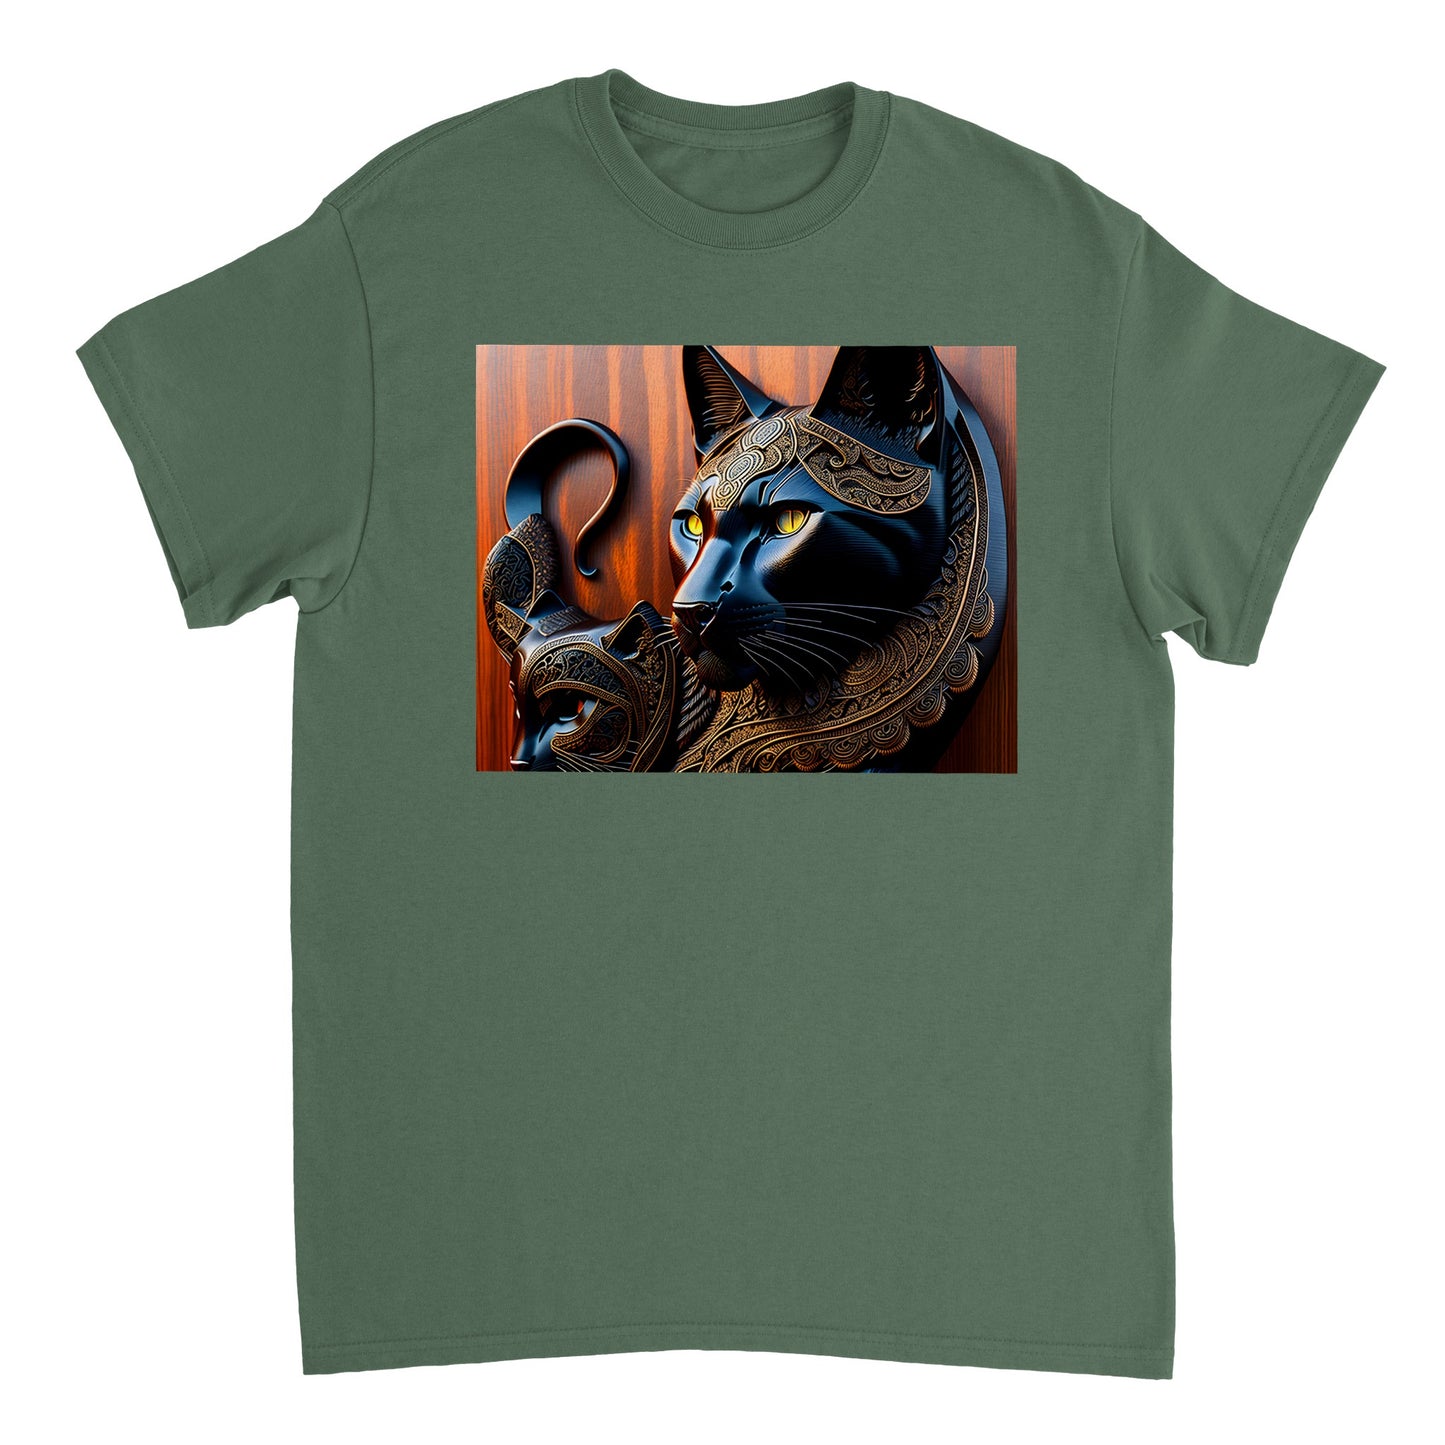 3D Wooden Animal Art - Heavyweight Unisex Crewneck T-shirt 83